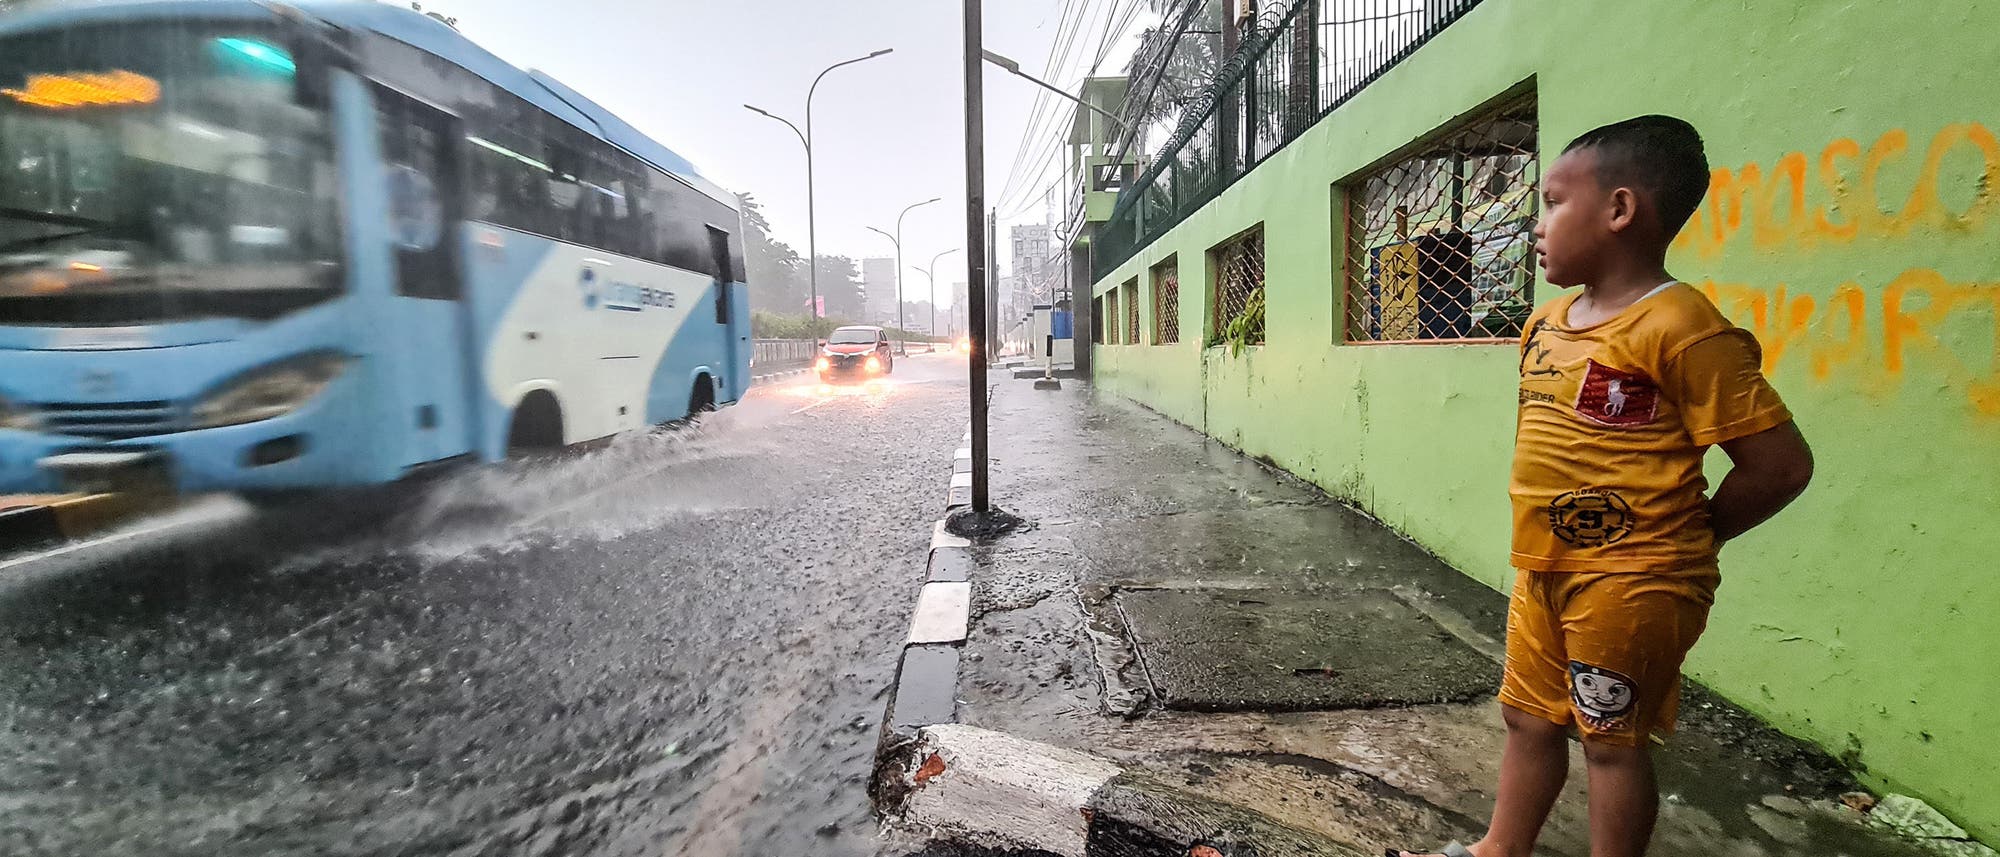 Nach heftigen Regenfällen am 16. Oktober 2020 waren Straßen in der Stadt Jakarta, Indonesien, überschwemmt.